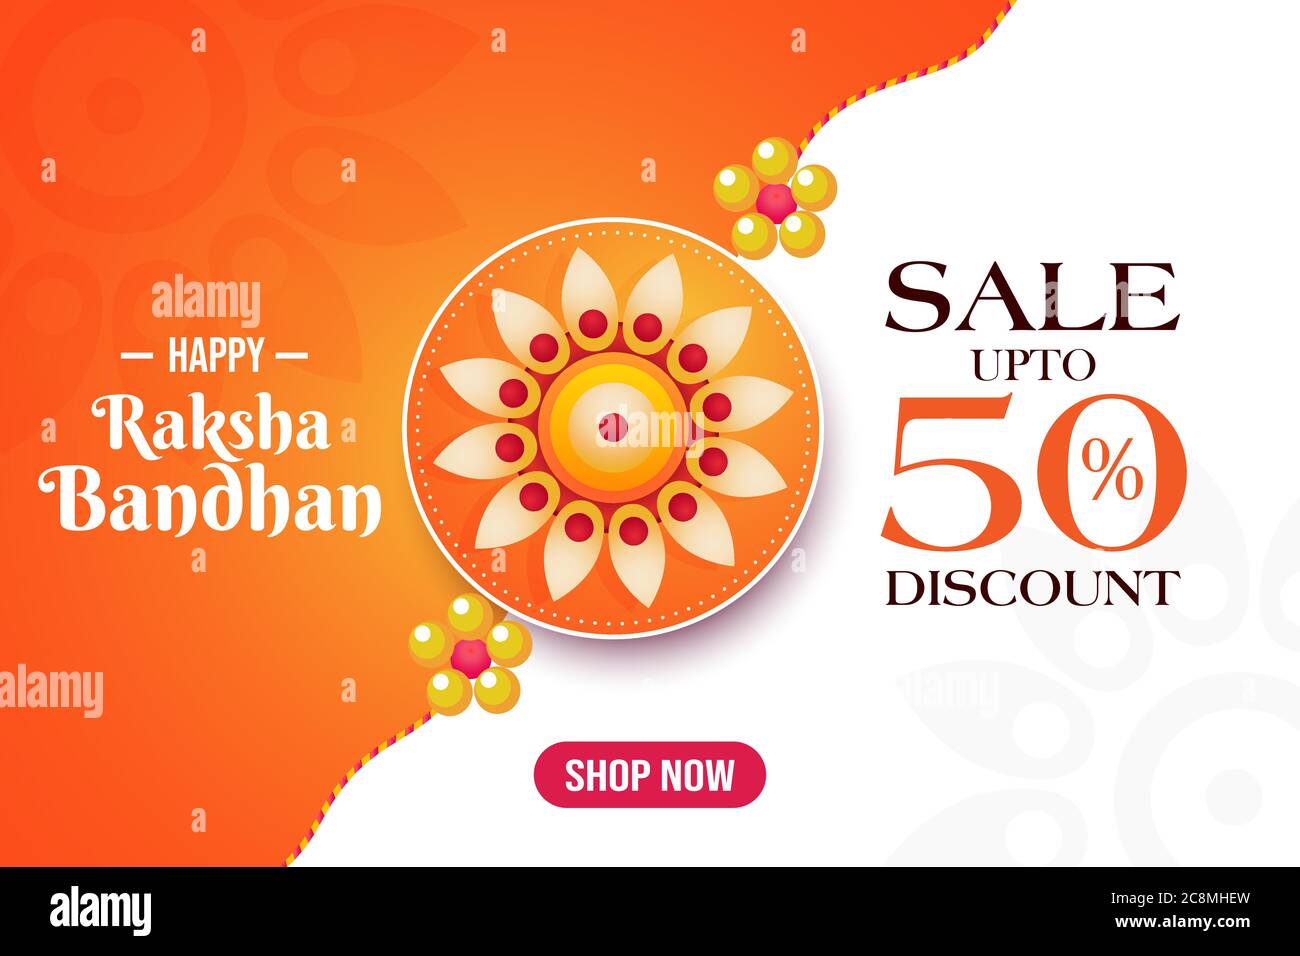 Happy Raksha Bandhan Sale Banner, Rabatt bis zu 50%, Shop jetzt Poster, schöne rakhi Vorlage, Vektor Stock Vektor